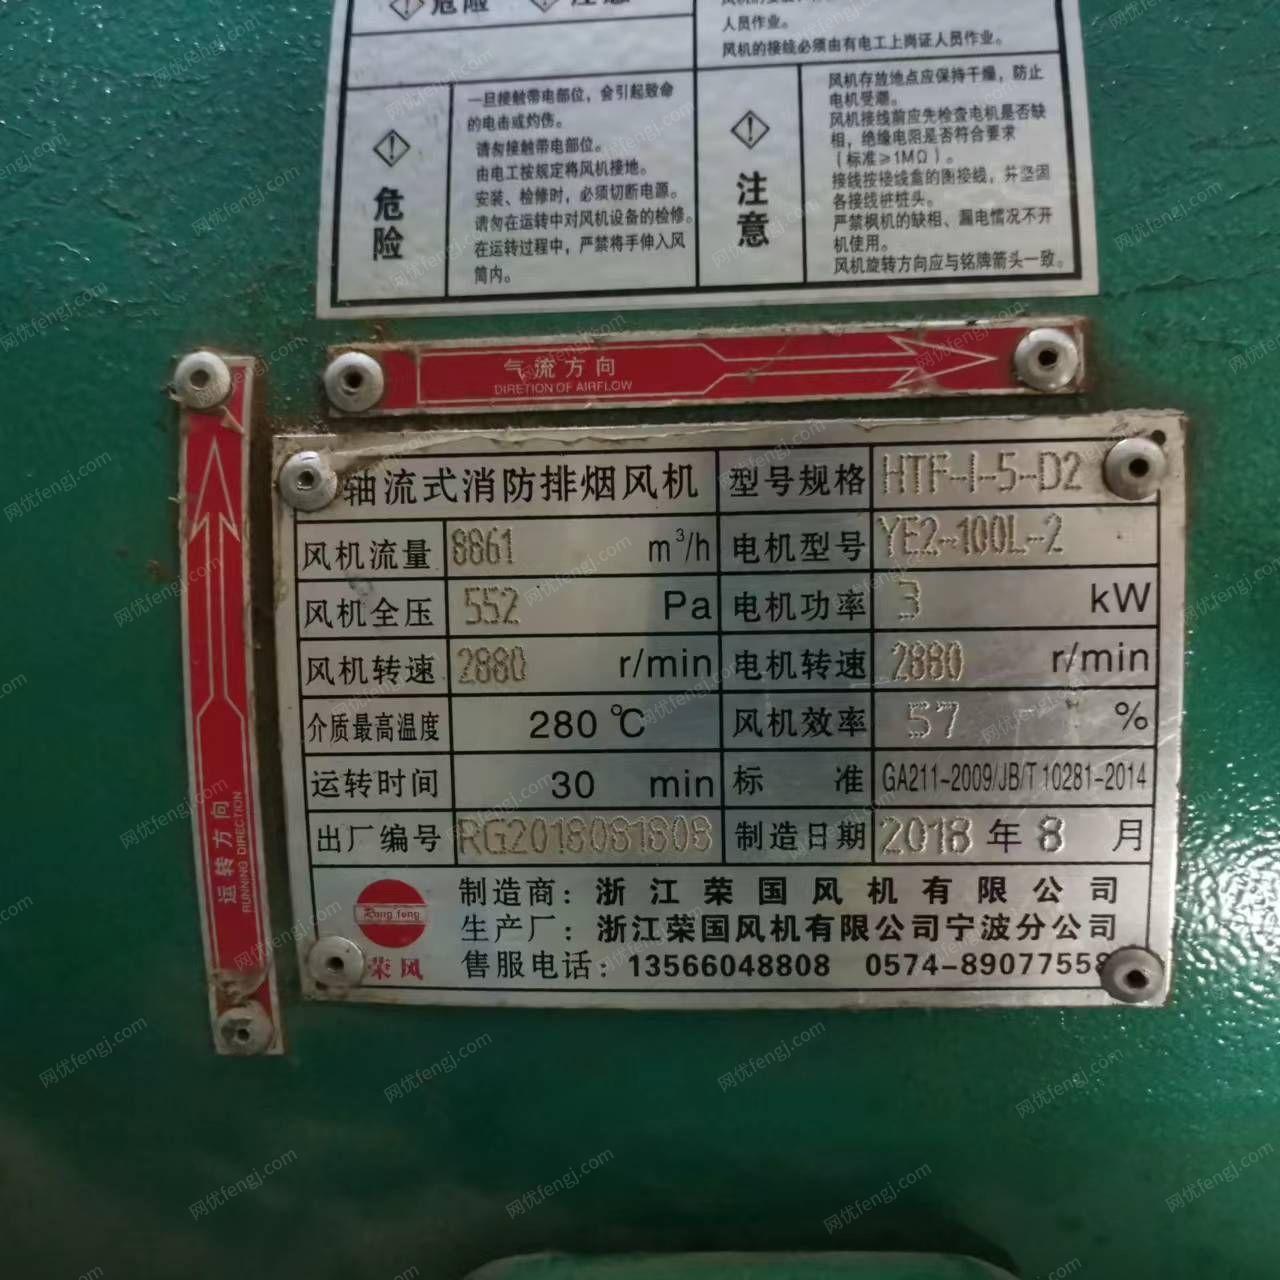 出售排烟机 2018产的，浙江宁波荣国牌，3/5.5KW俩种，没用过